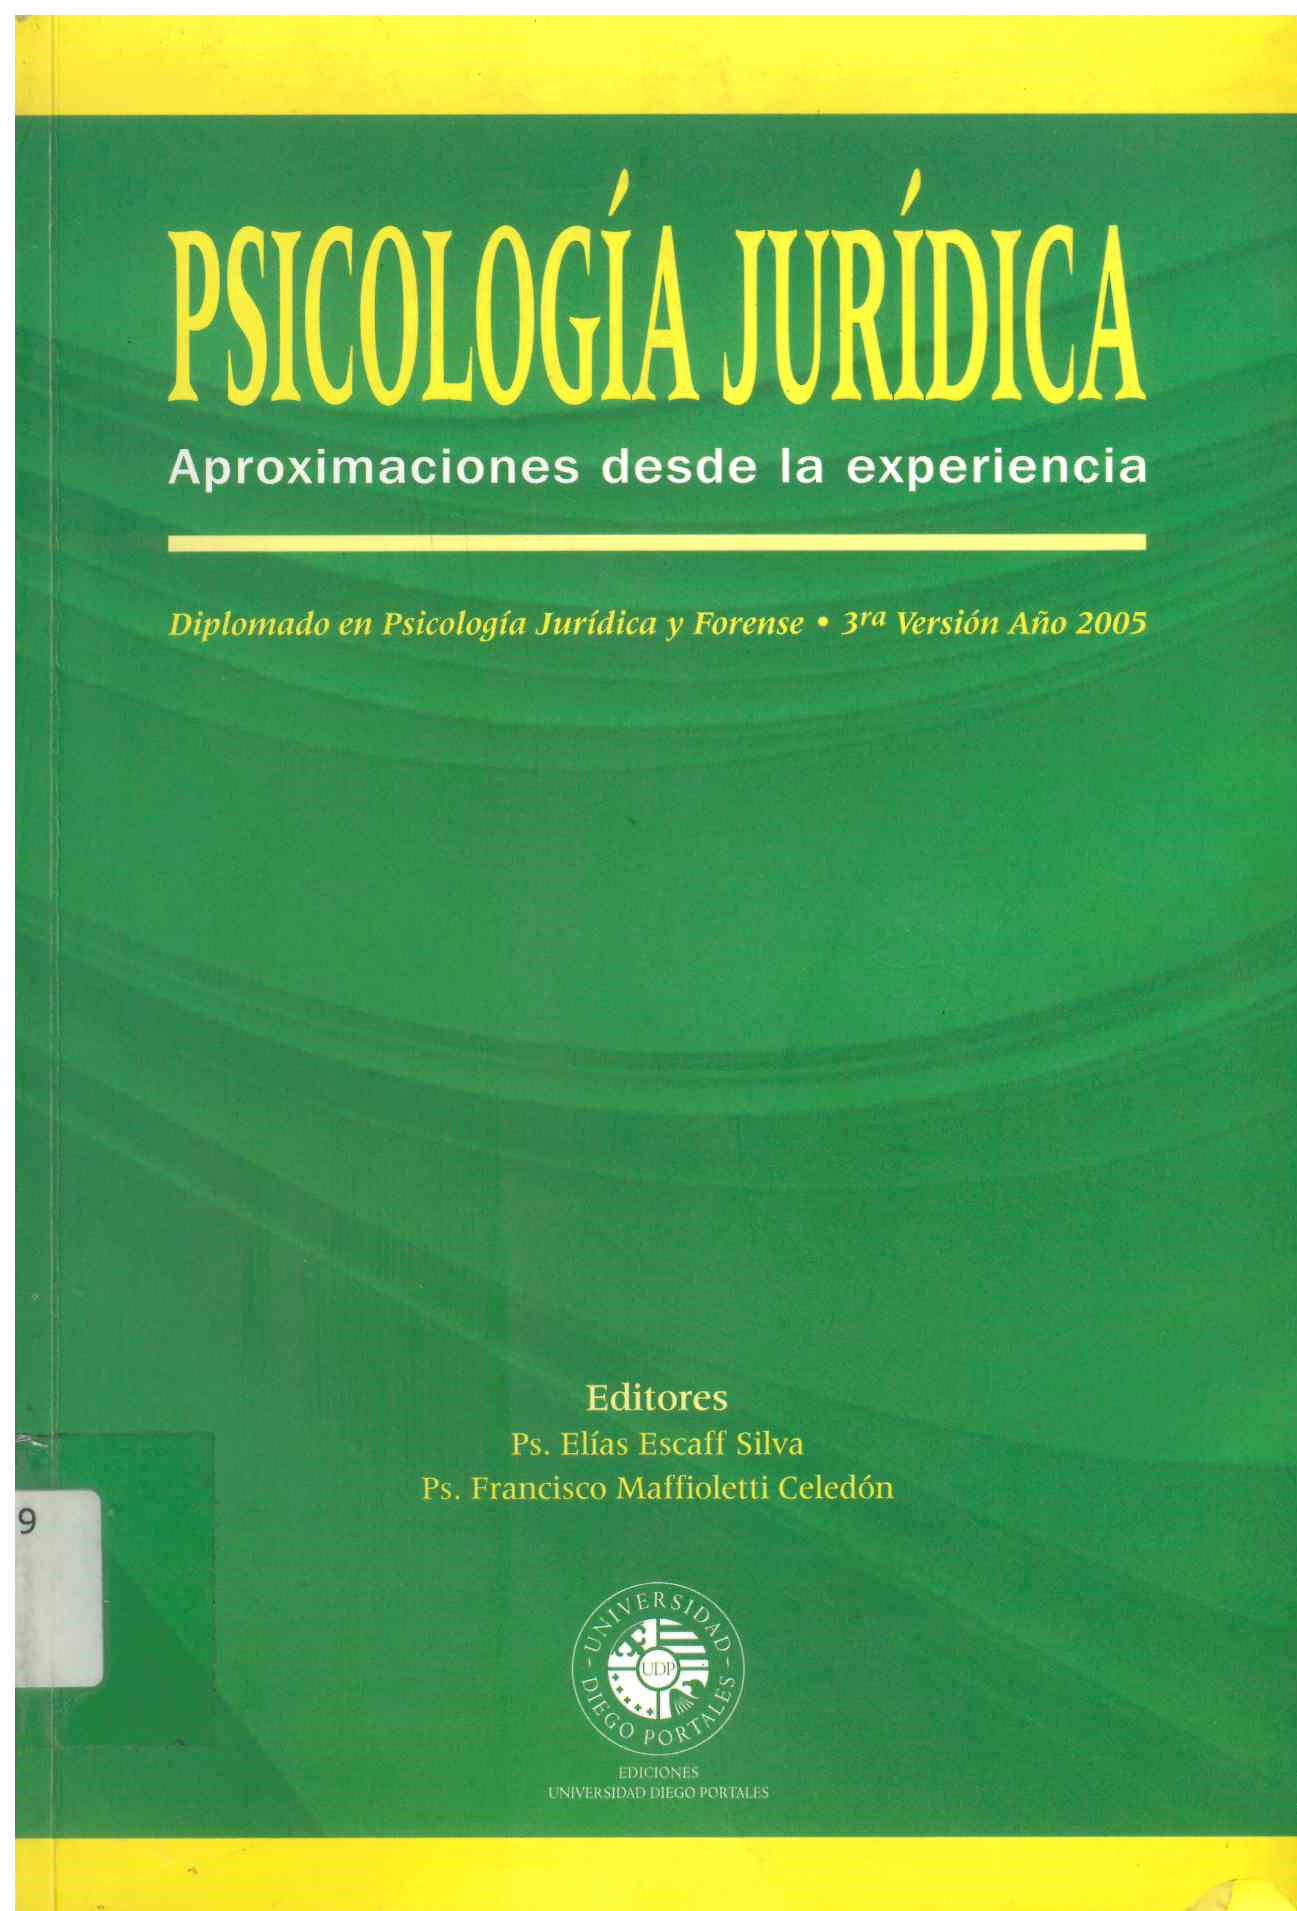 Psicología jurídica, aproximaciones desde la experiencia : diplomado en psicología jurídica y Forense 3a. versión año 2005